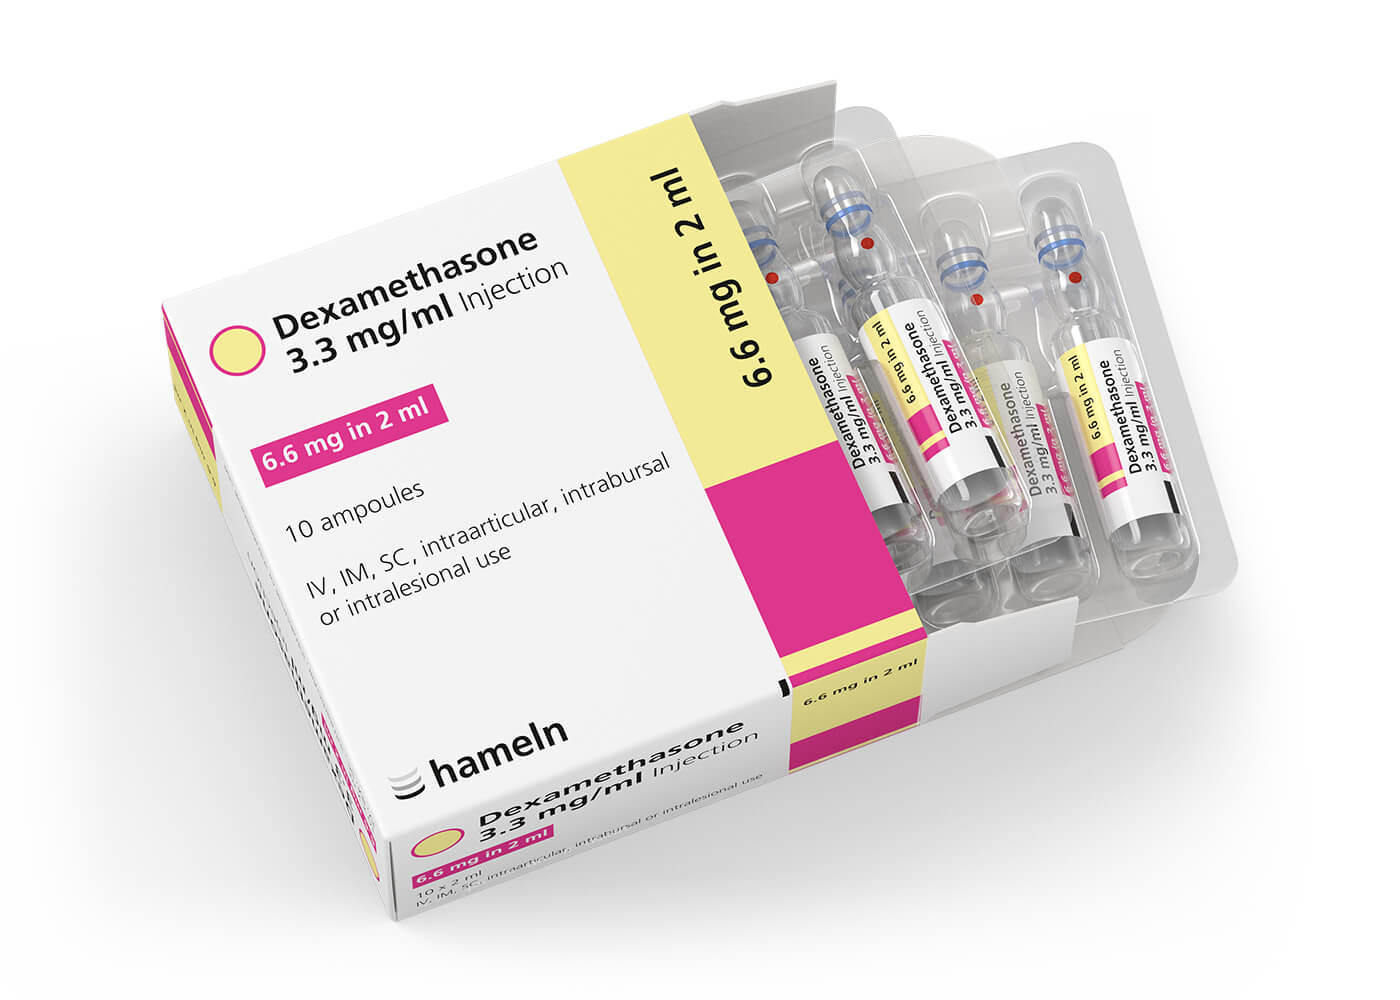 Dexamethasone_UK_3-3_mg-ml_in_2_ml_Pack-Amp_10St_2020-13_V1